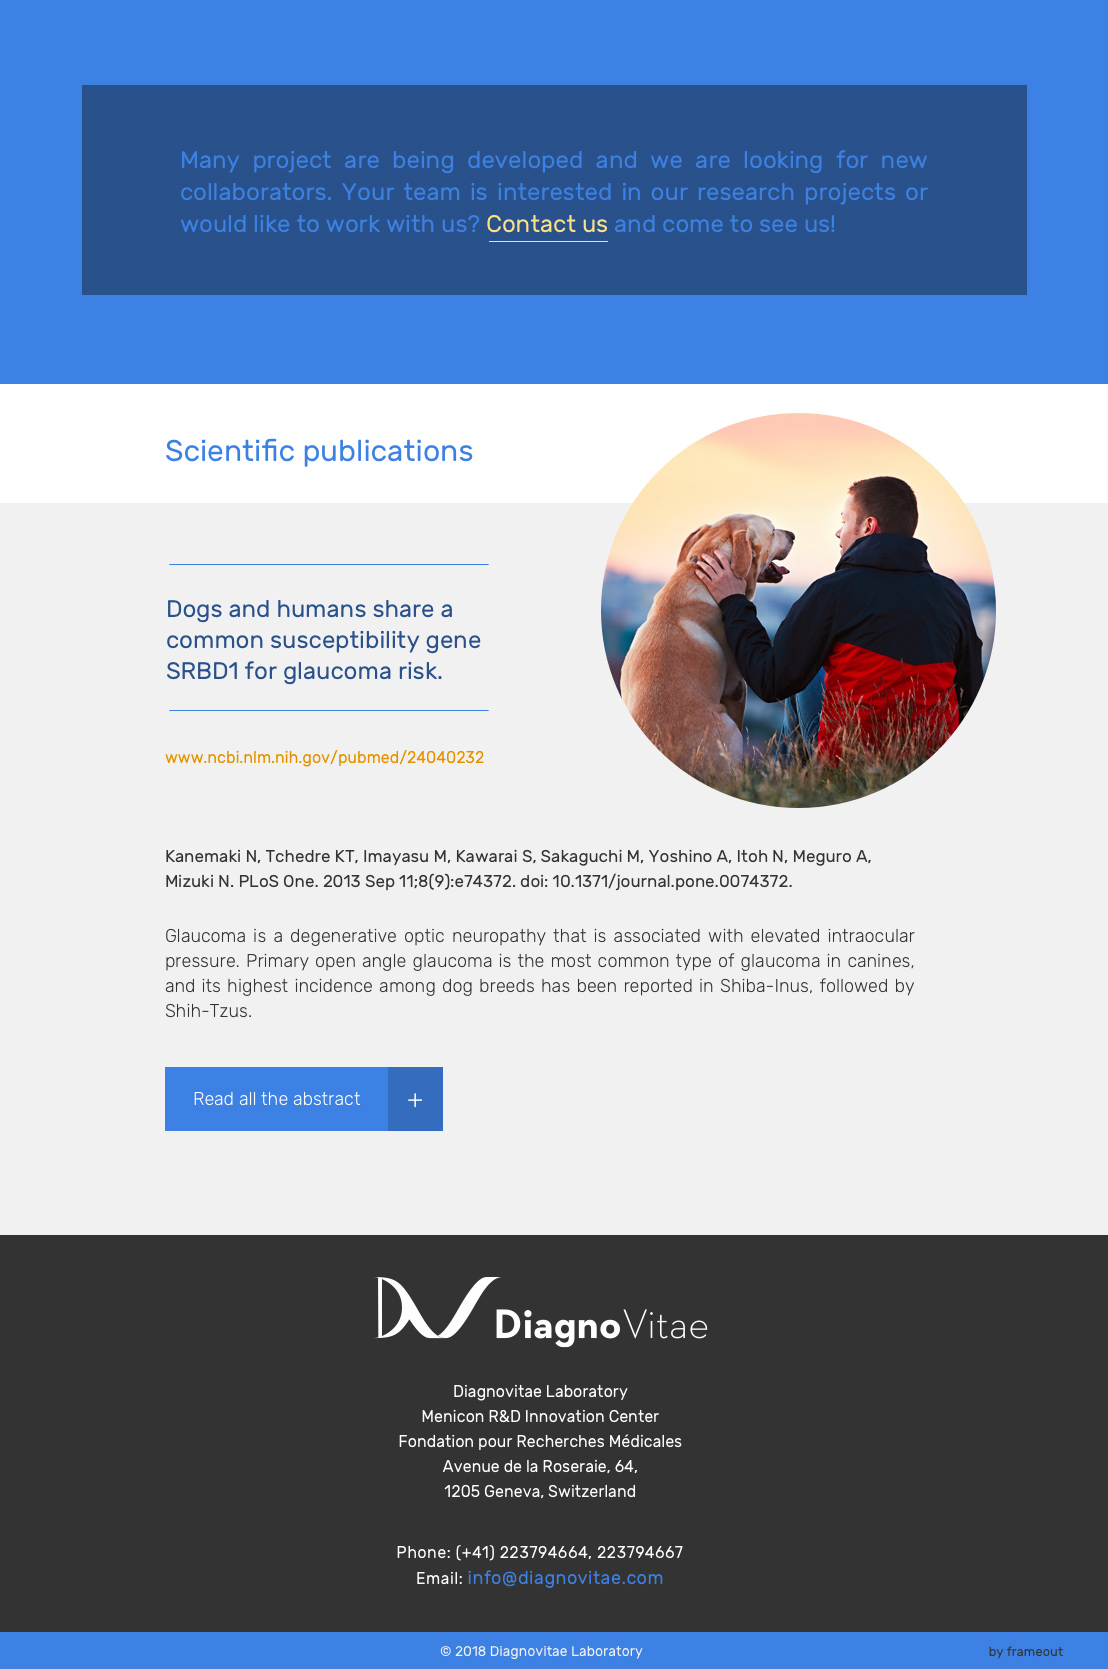 Diagnovitae - project image 3